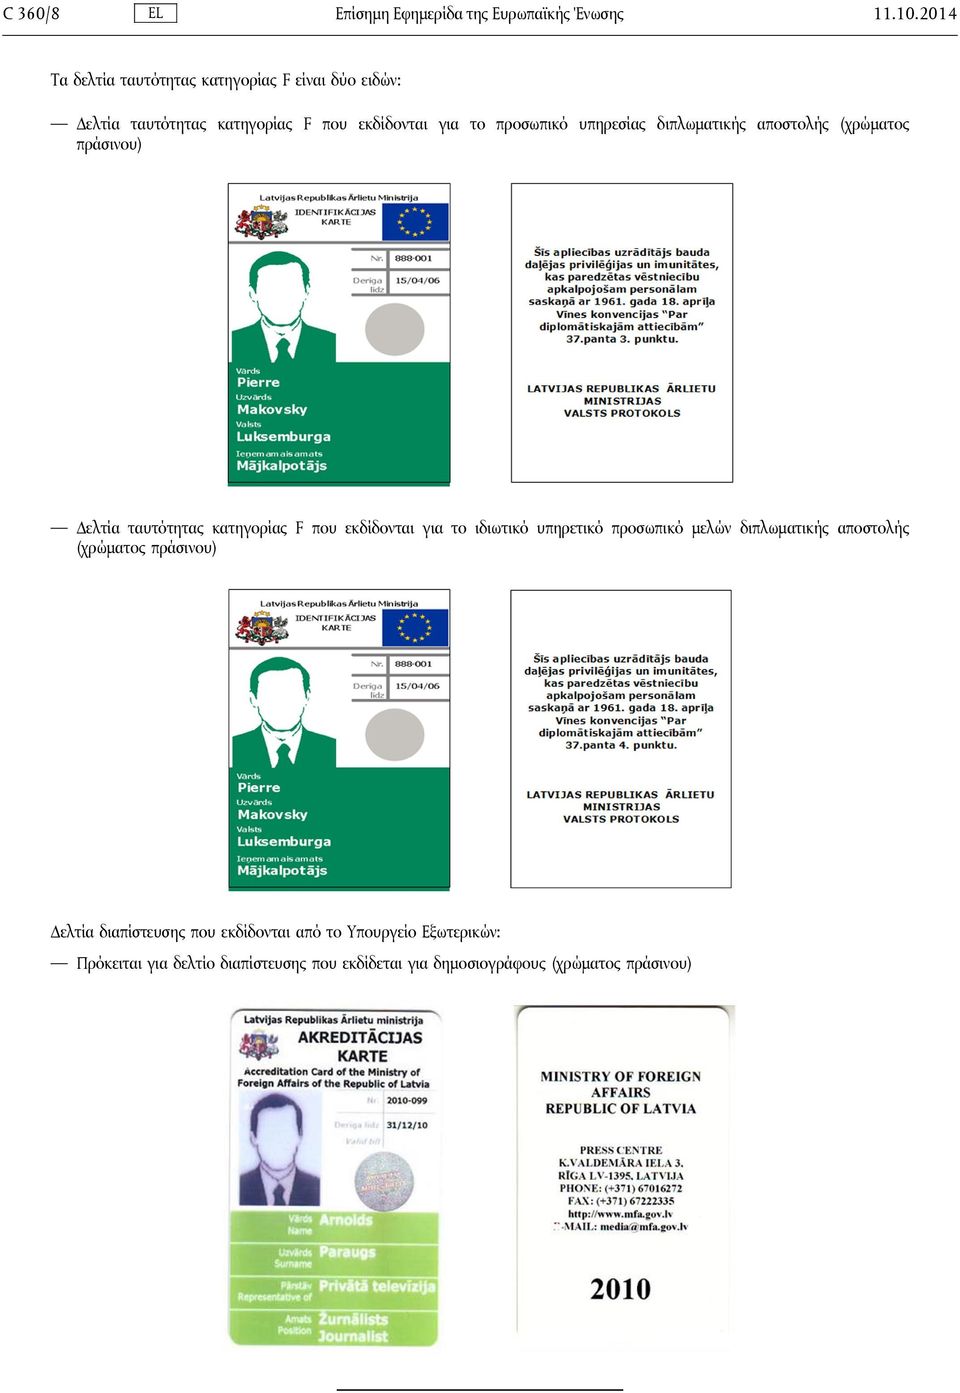 υπηρεσίας διπλωματικής αποστολής (χρώματος πράσινου) Δελτία ταυτότητας κατηγορίας F που εκδίδονται για το ιδιωτικό υπηρετικό